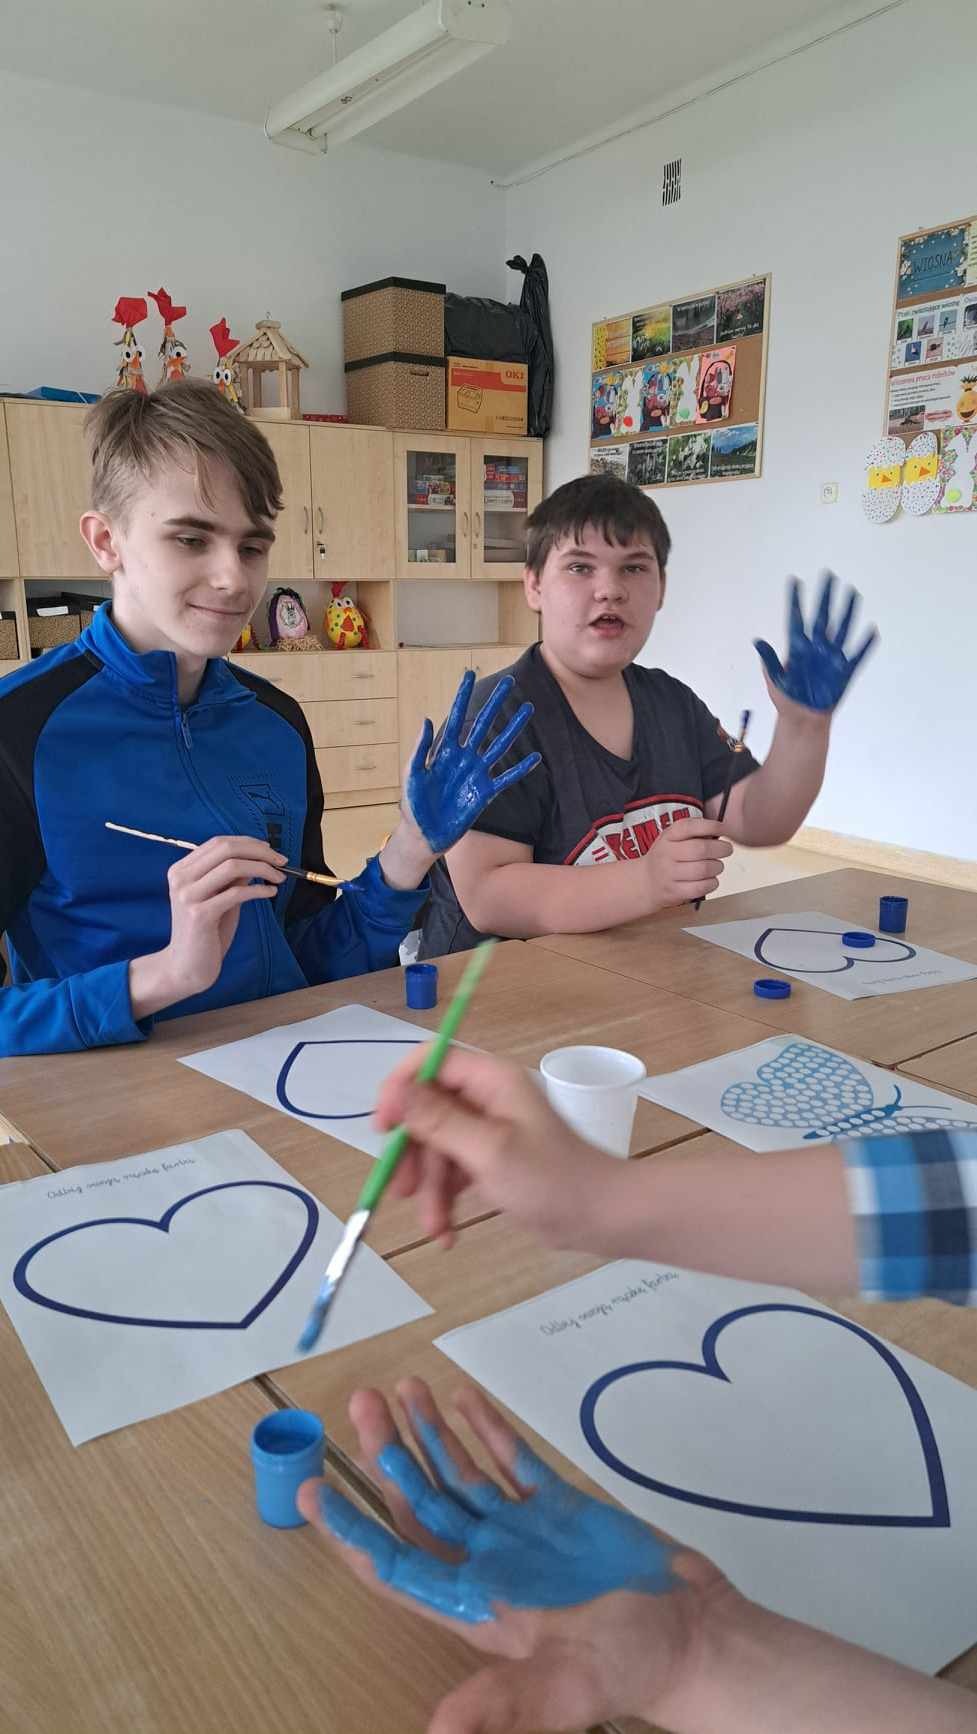 Uczniowie siedzą przy stoliku i wnętrze swojej dłoni malują niebieską farbą